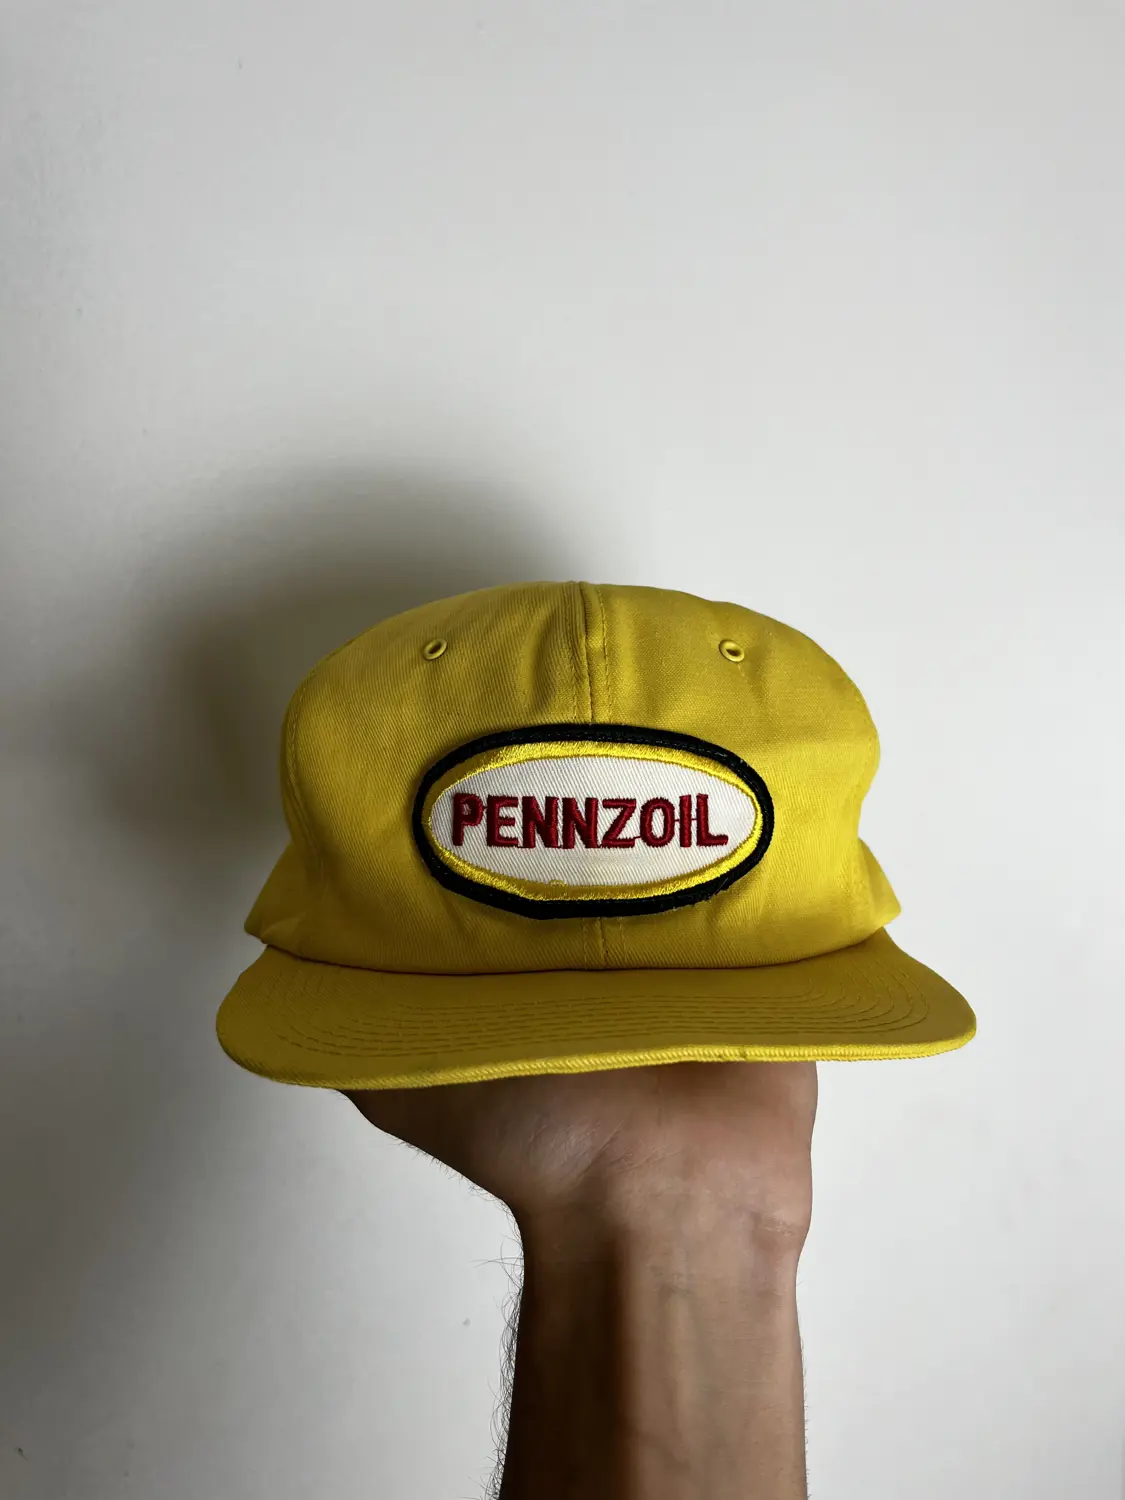 Pennzoil patch hat